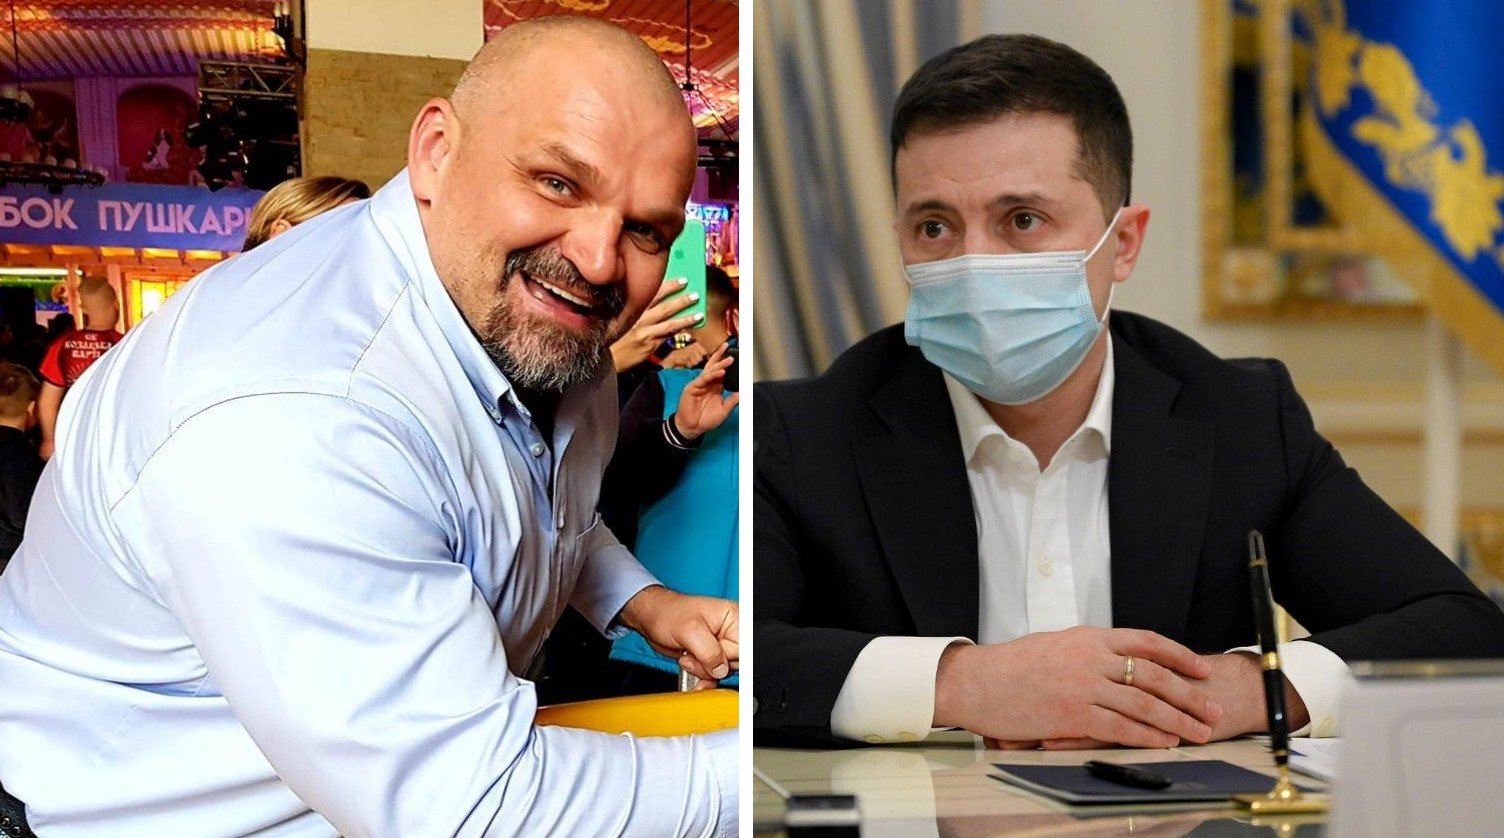 Зеленского обвинили в предвыборных манипуляциях